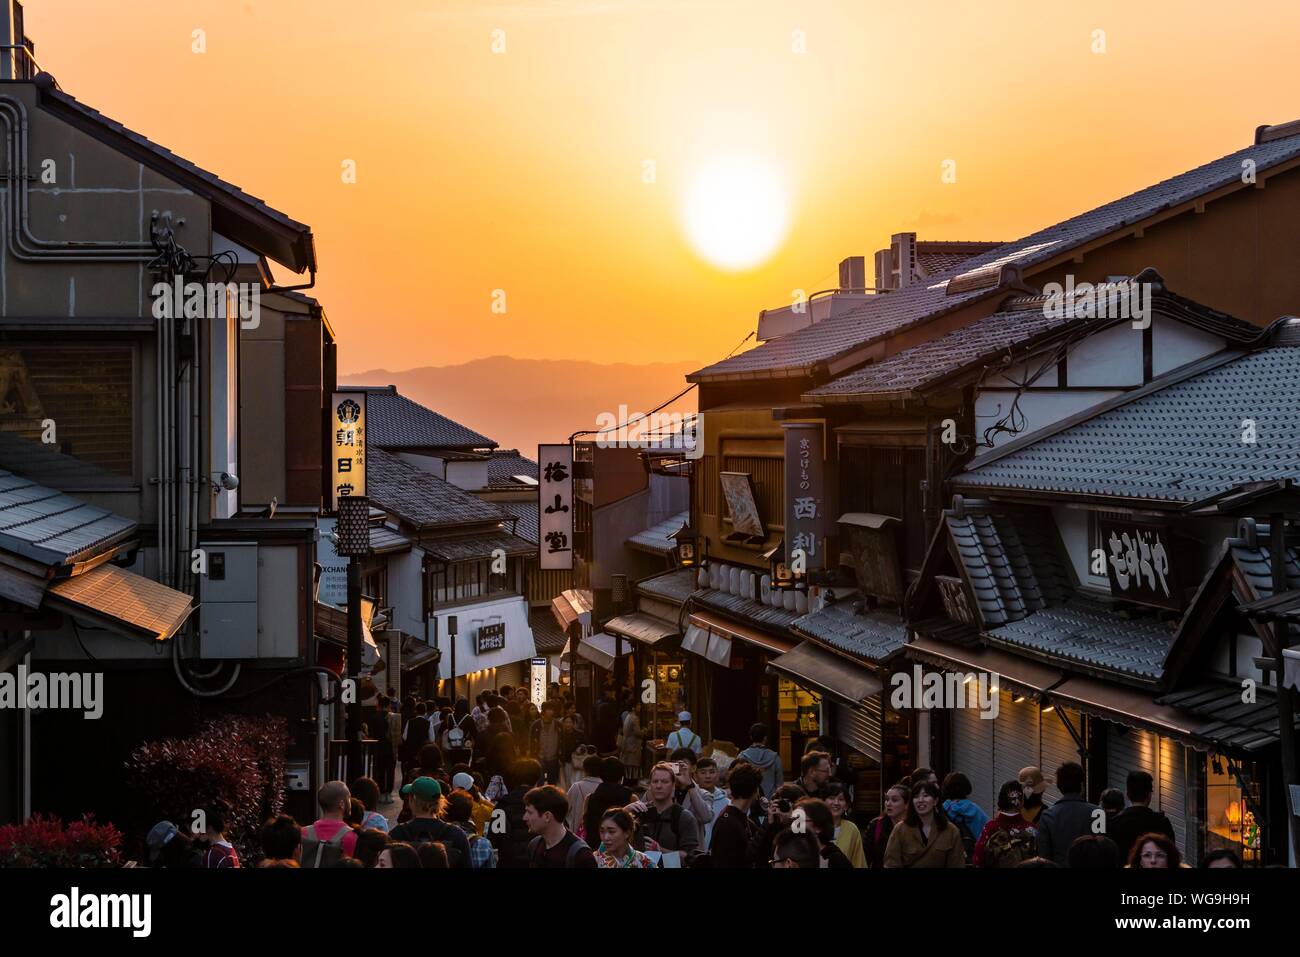 Crepuscolo, la folla in un vicolo, Matsubara dori vicolo storico nel centro storico con case tradizionali giapponesi, Kiyomizu, Kyoto, Giappone Foto Stock